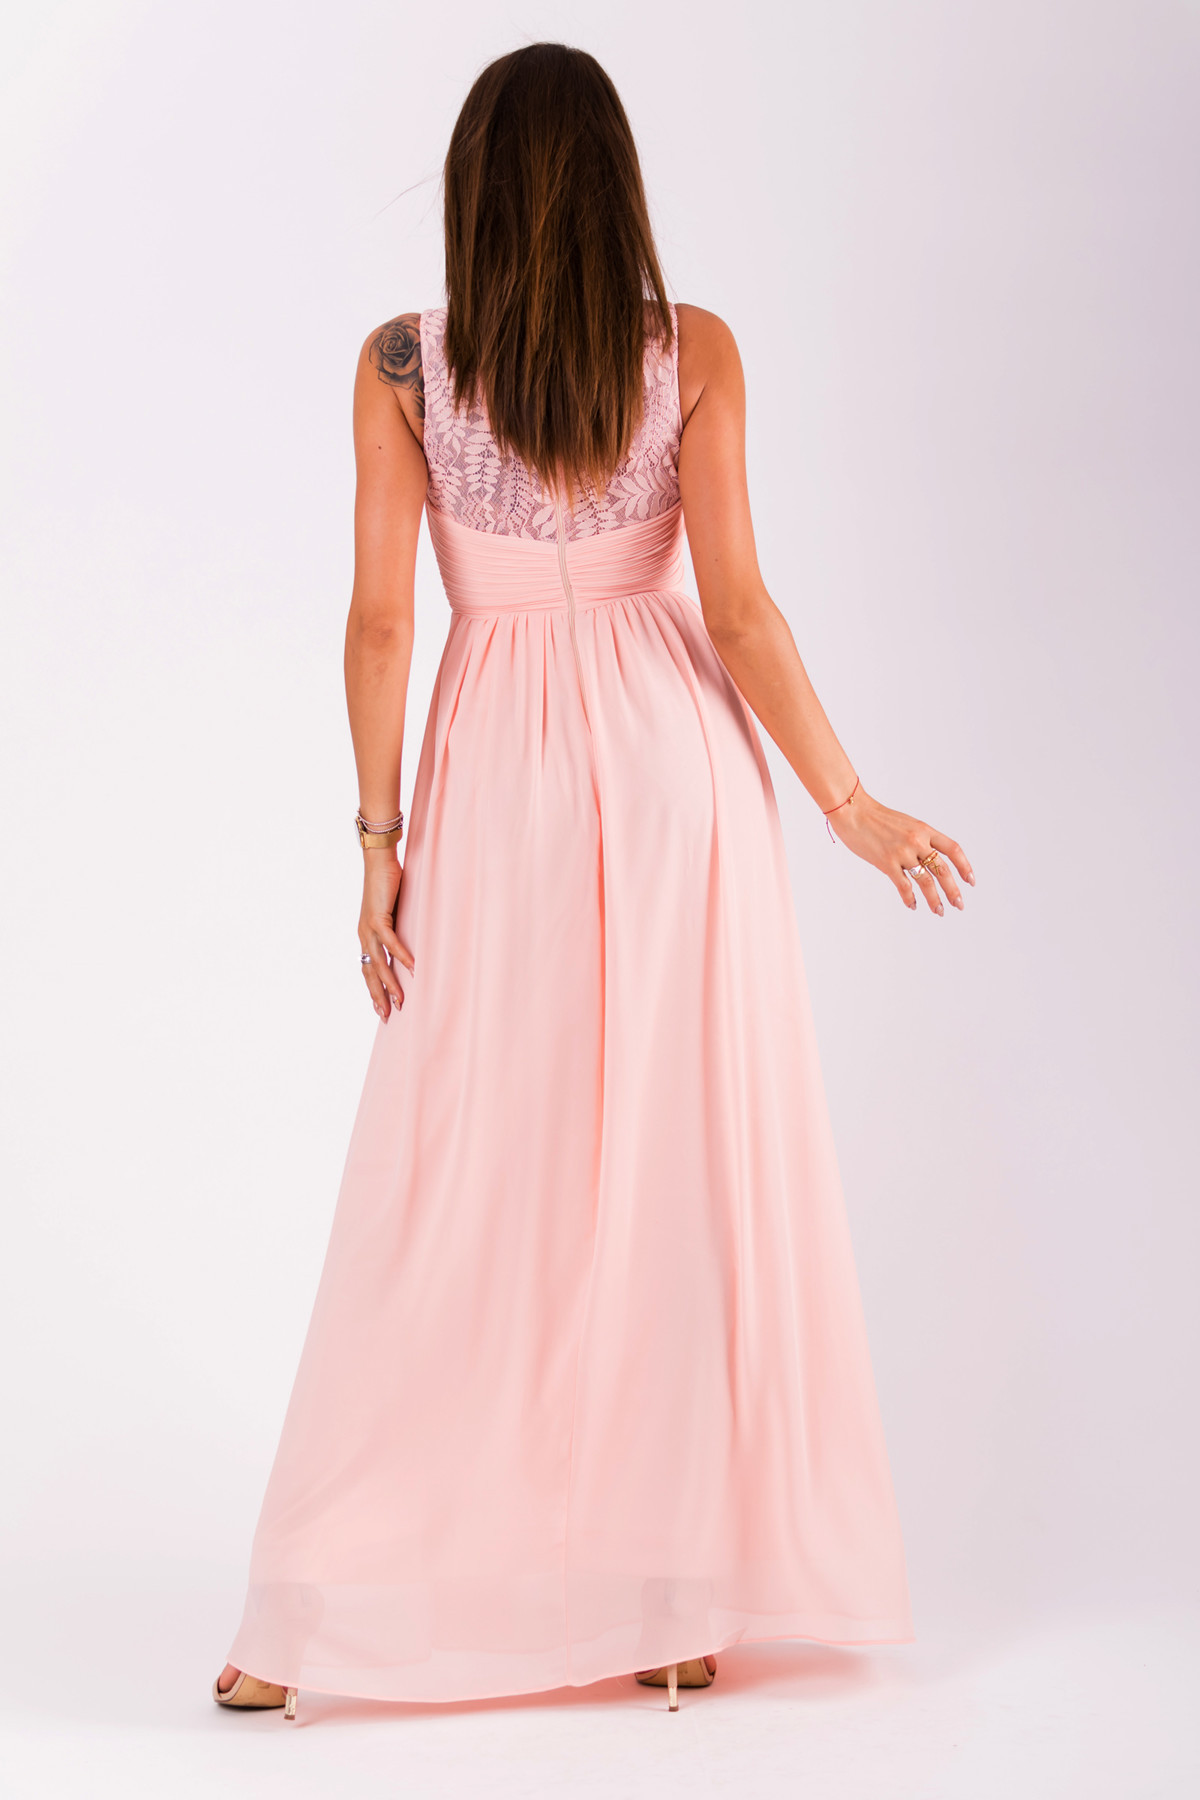 Společenské dámské šaty EVA&LOLA bez rukávů dlouhé růžové - Růžová - EVA&LOLA S